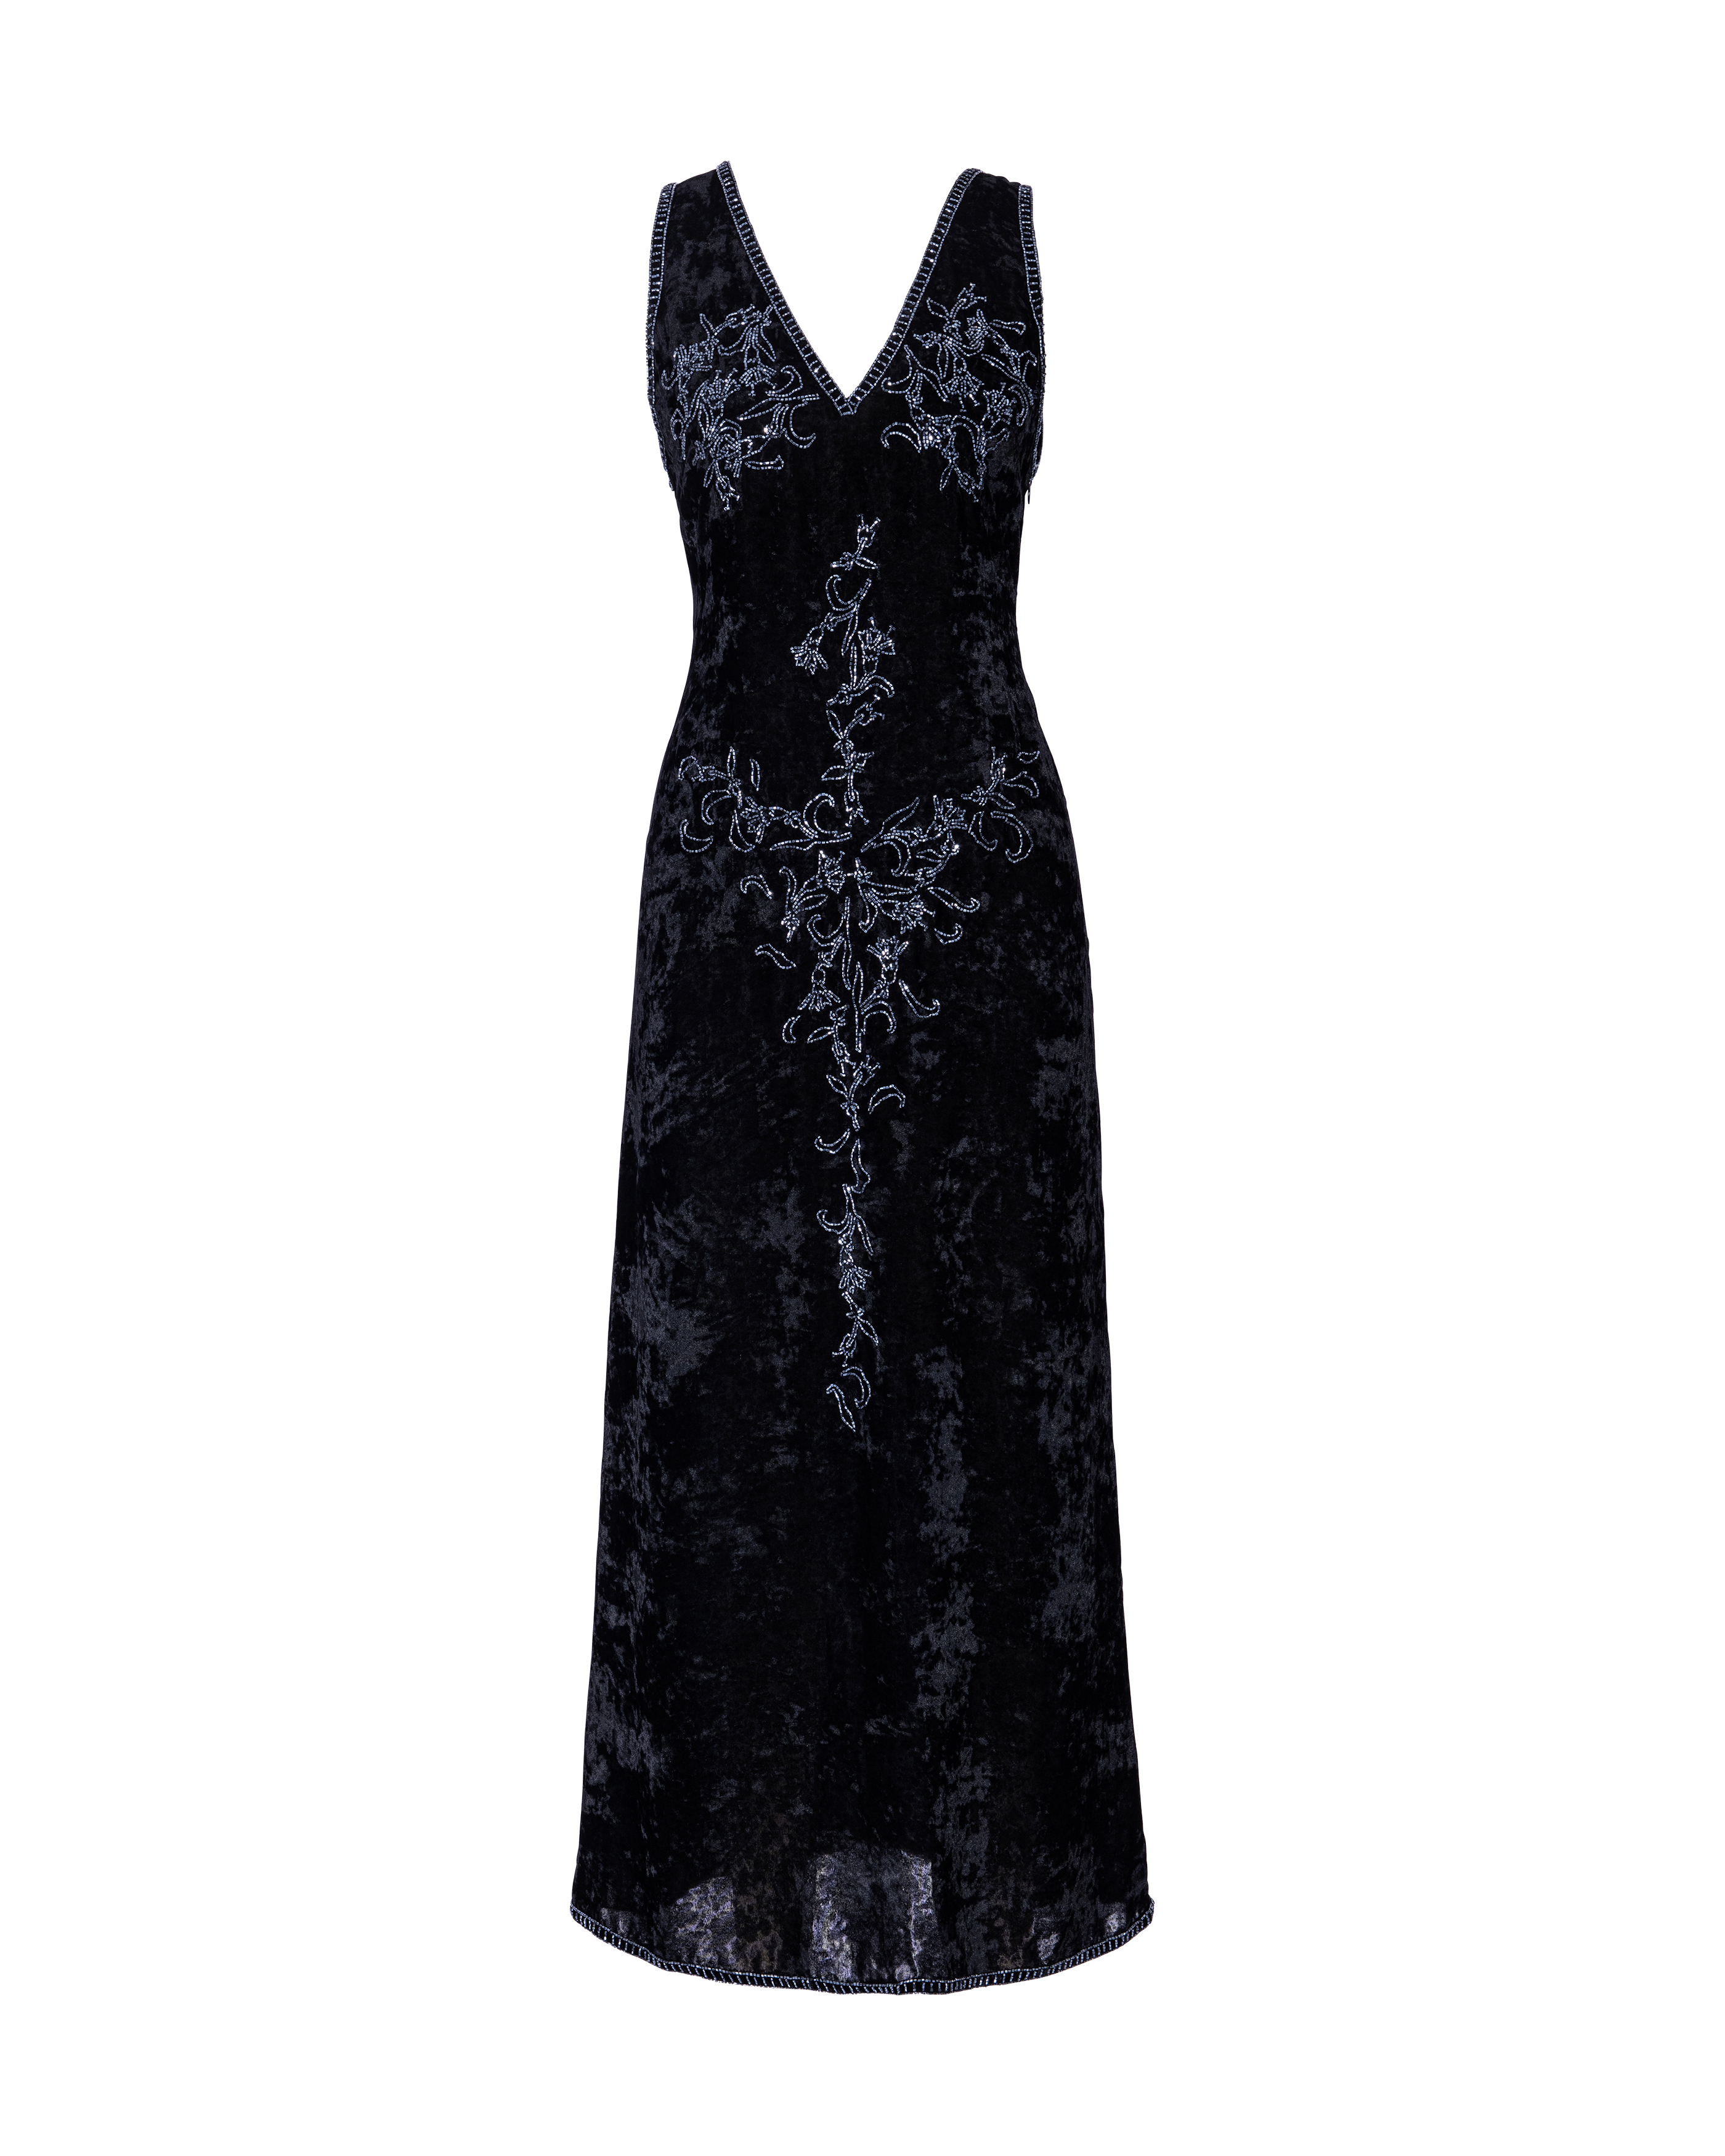 A/W 1997 Black Embellished Crushed Velvet Gown